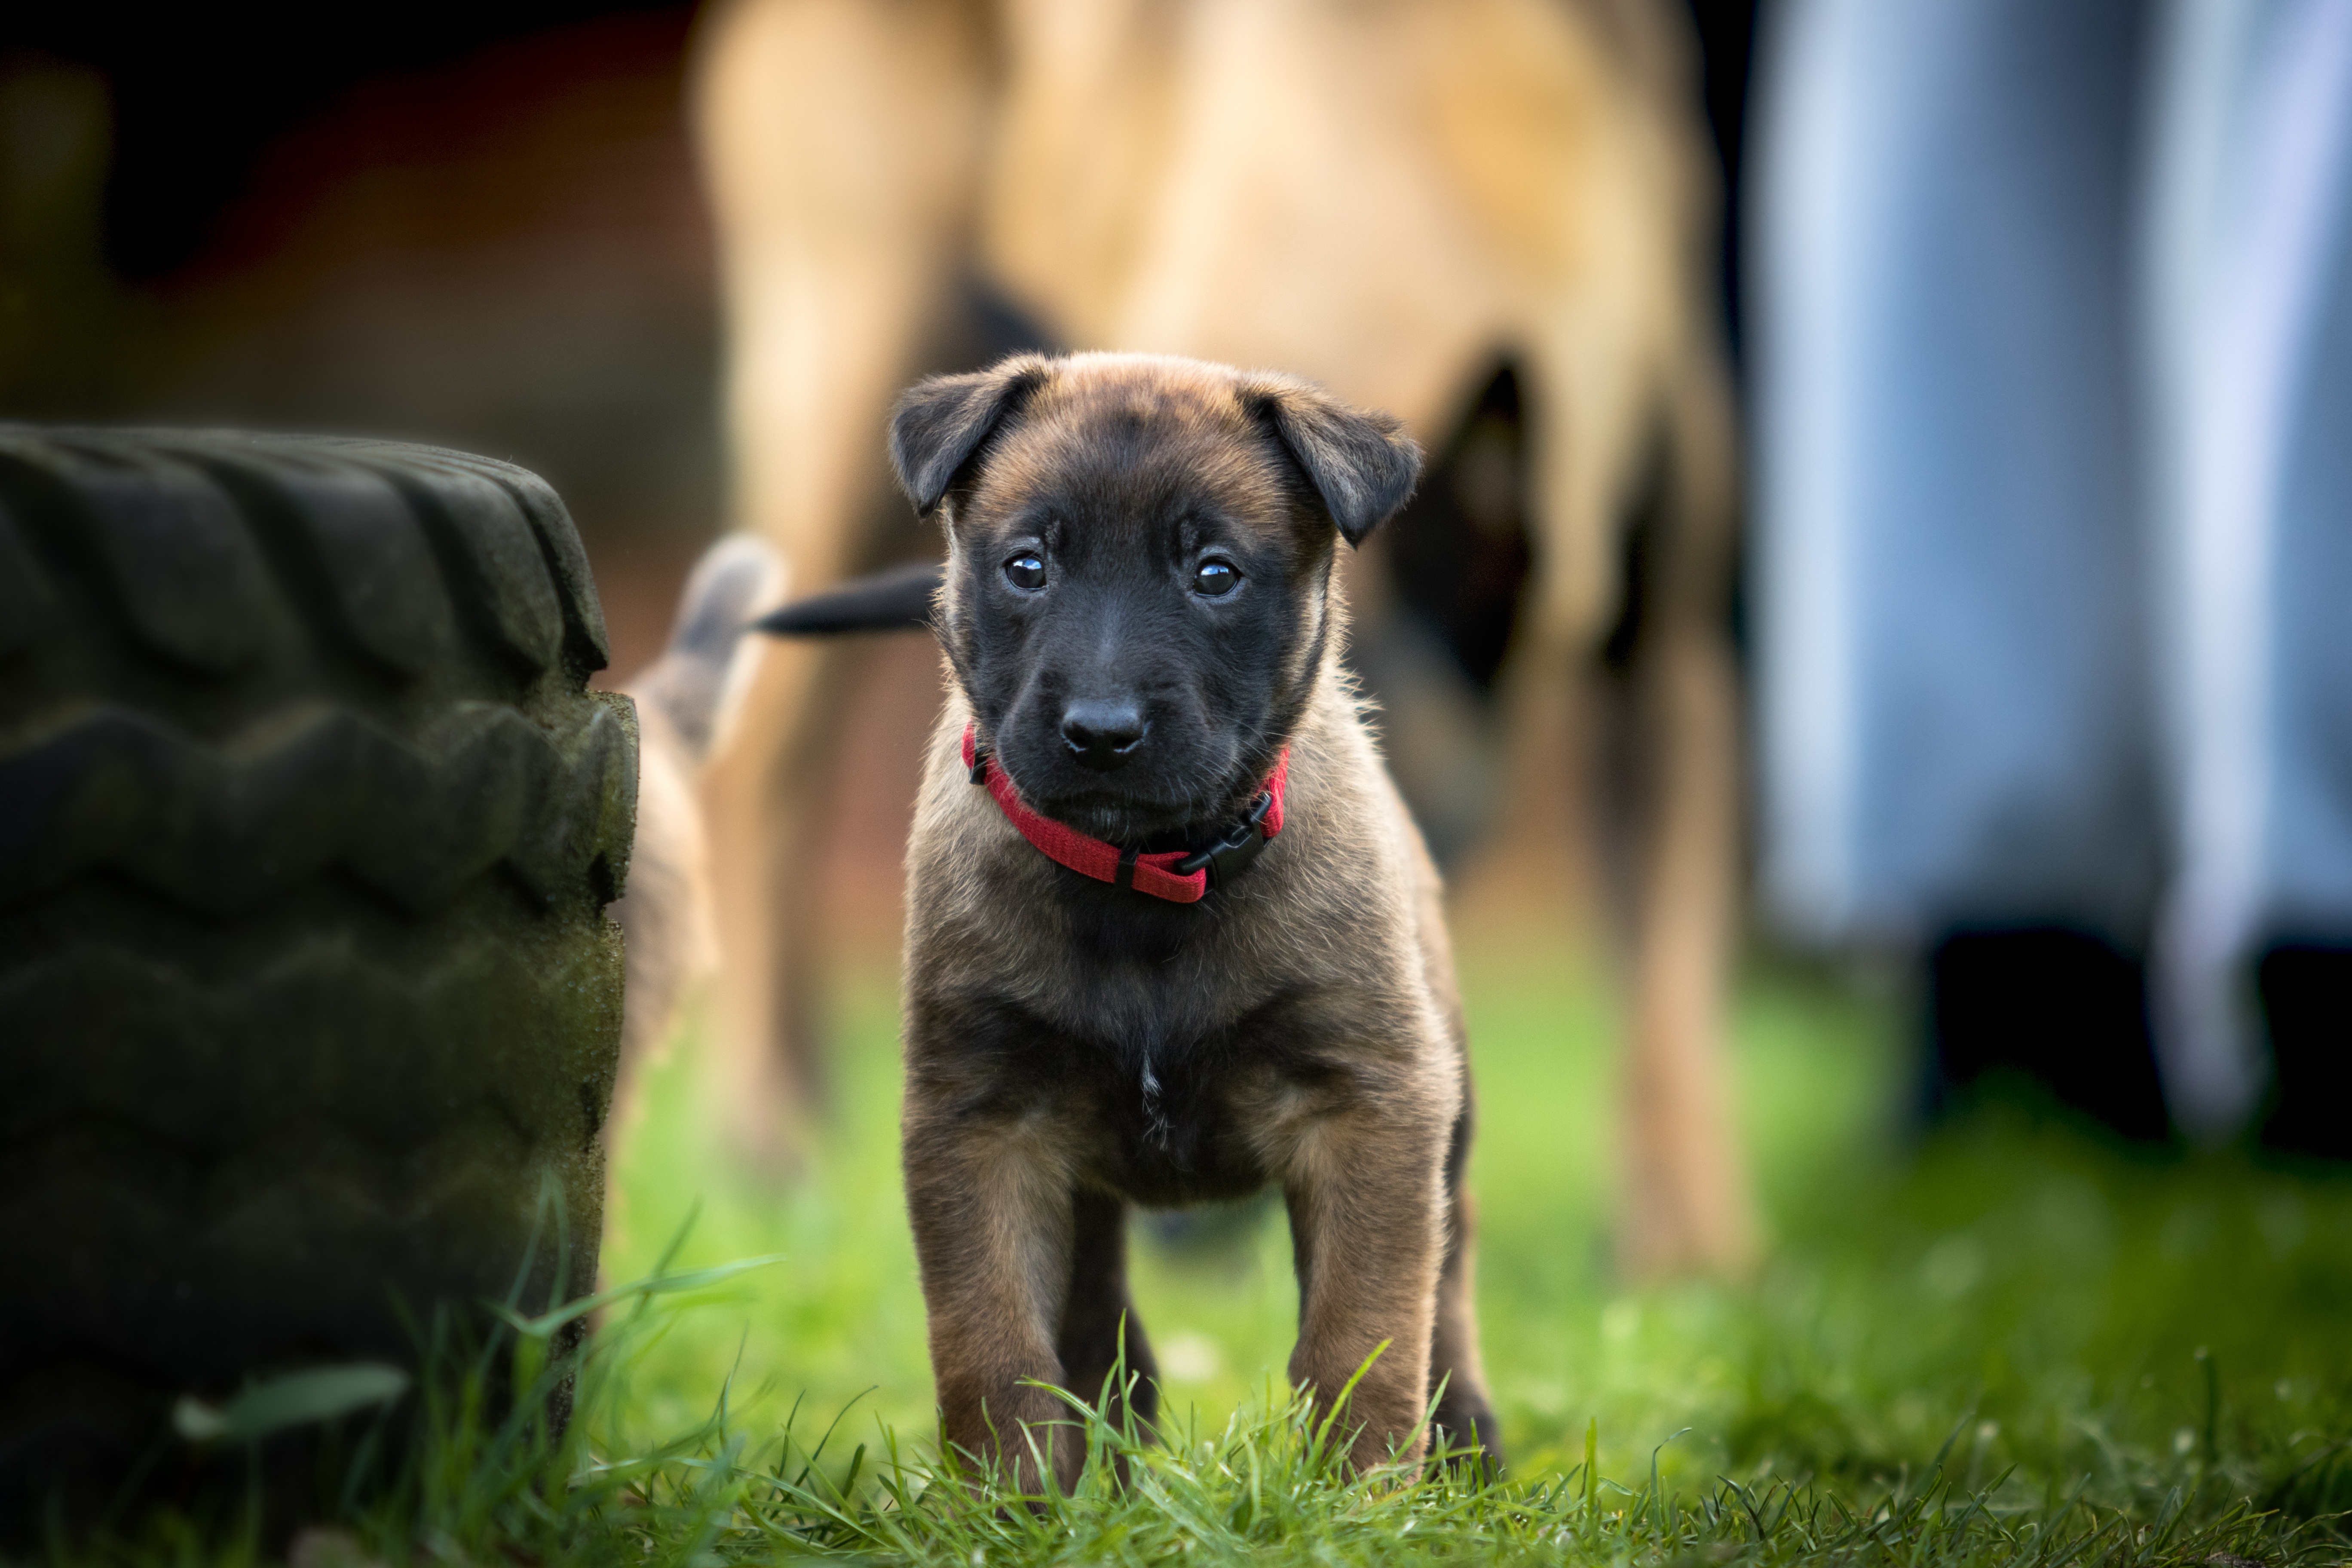 Free download wallpaper Dogs, Dog, Animal, Puppy, Belgian Shepherd, Baby Animal on your PC desktop